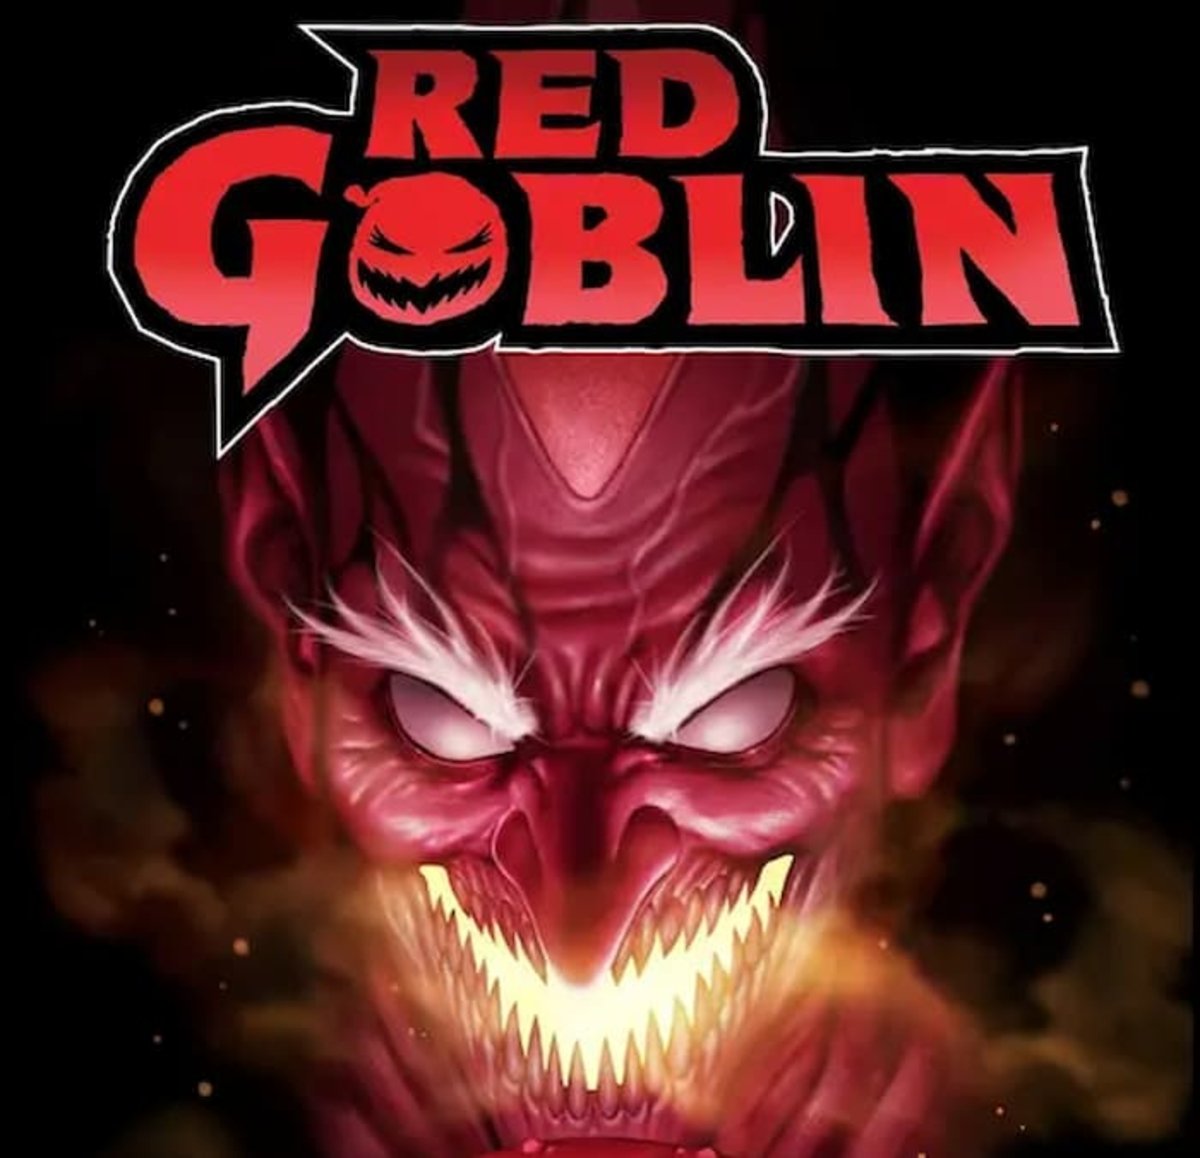 Portada del volumen #1 del cómic Red Goblin